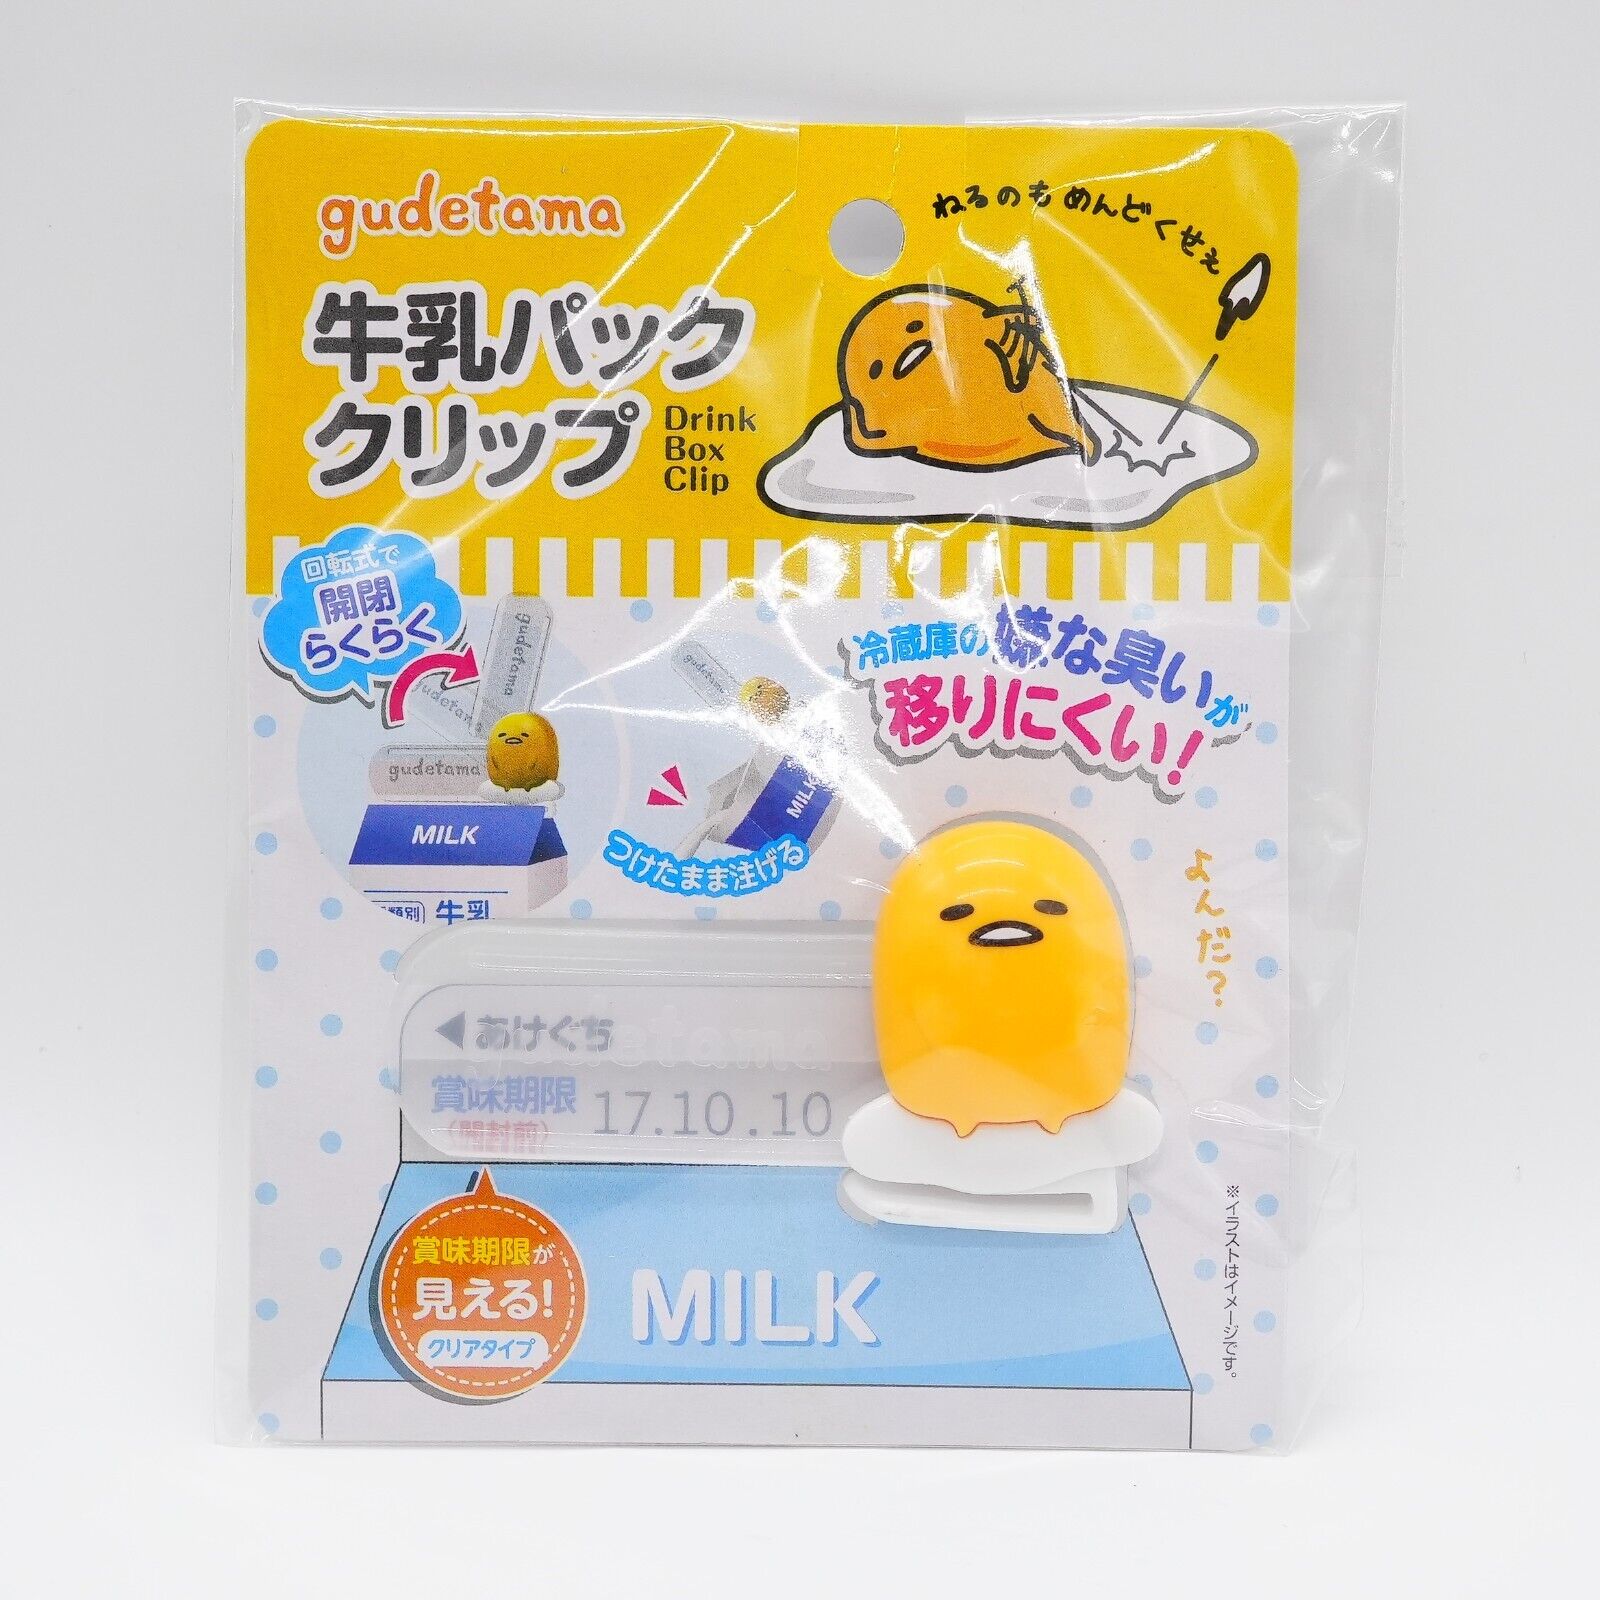 Sanrio JAPAN Gudetama Drink Box Milk Carton Box Clip